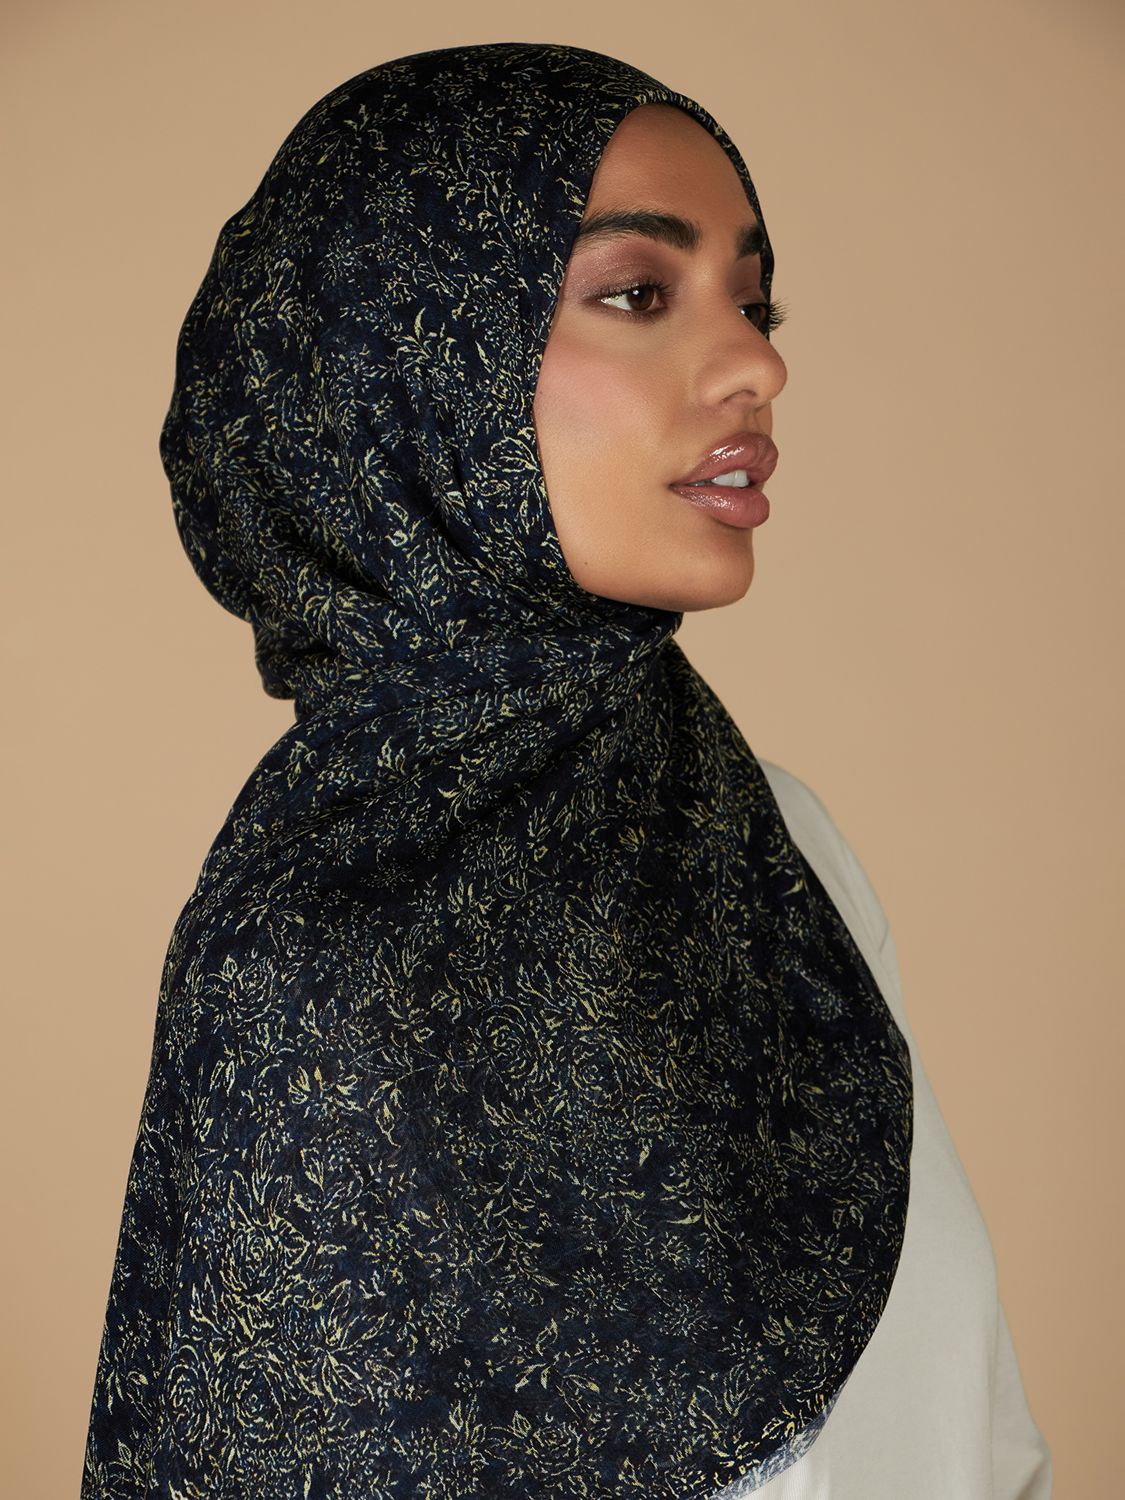 Aab Midnight Flora Print Hijab, Black/Multi, One Size